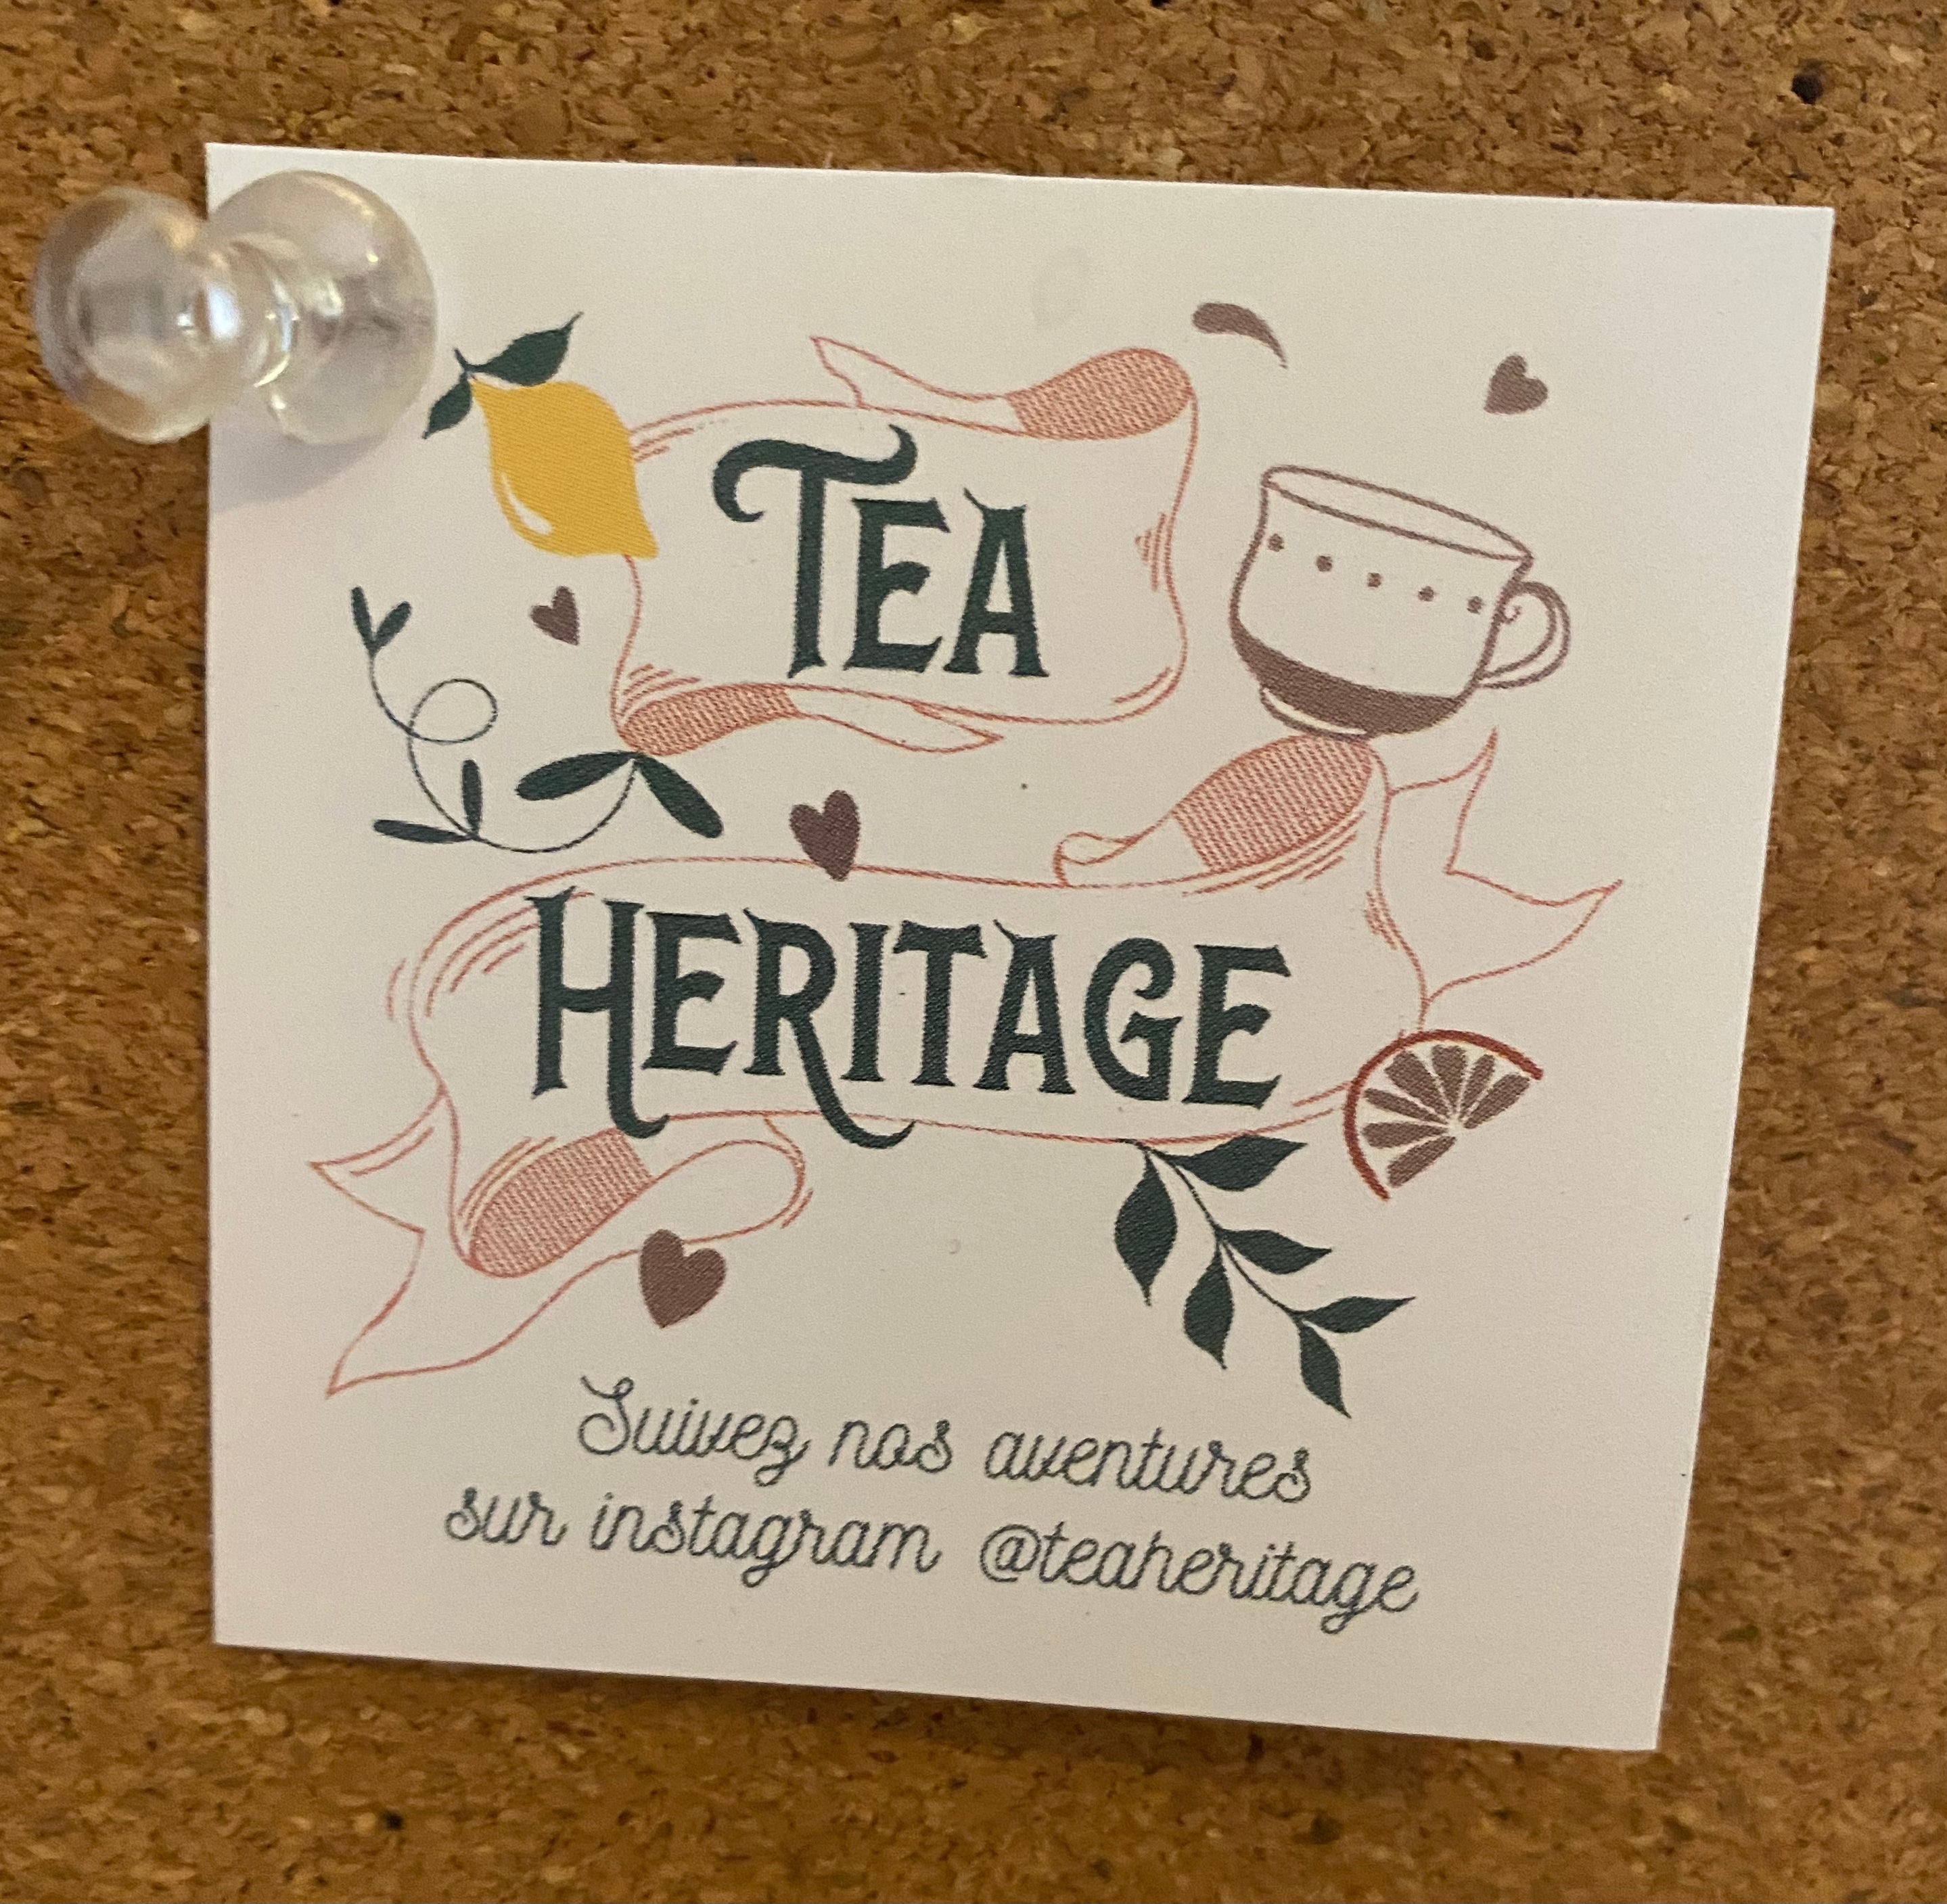 Tea Heritage Lemon Verbena Tea